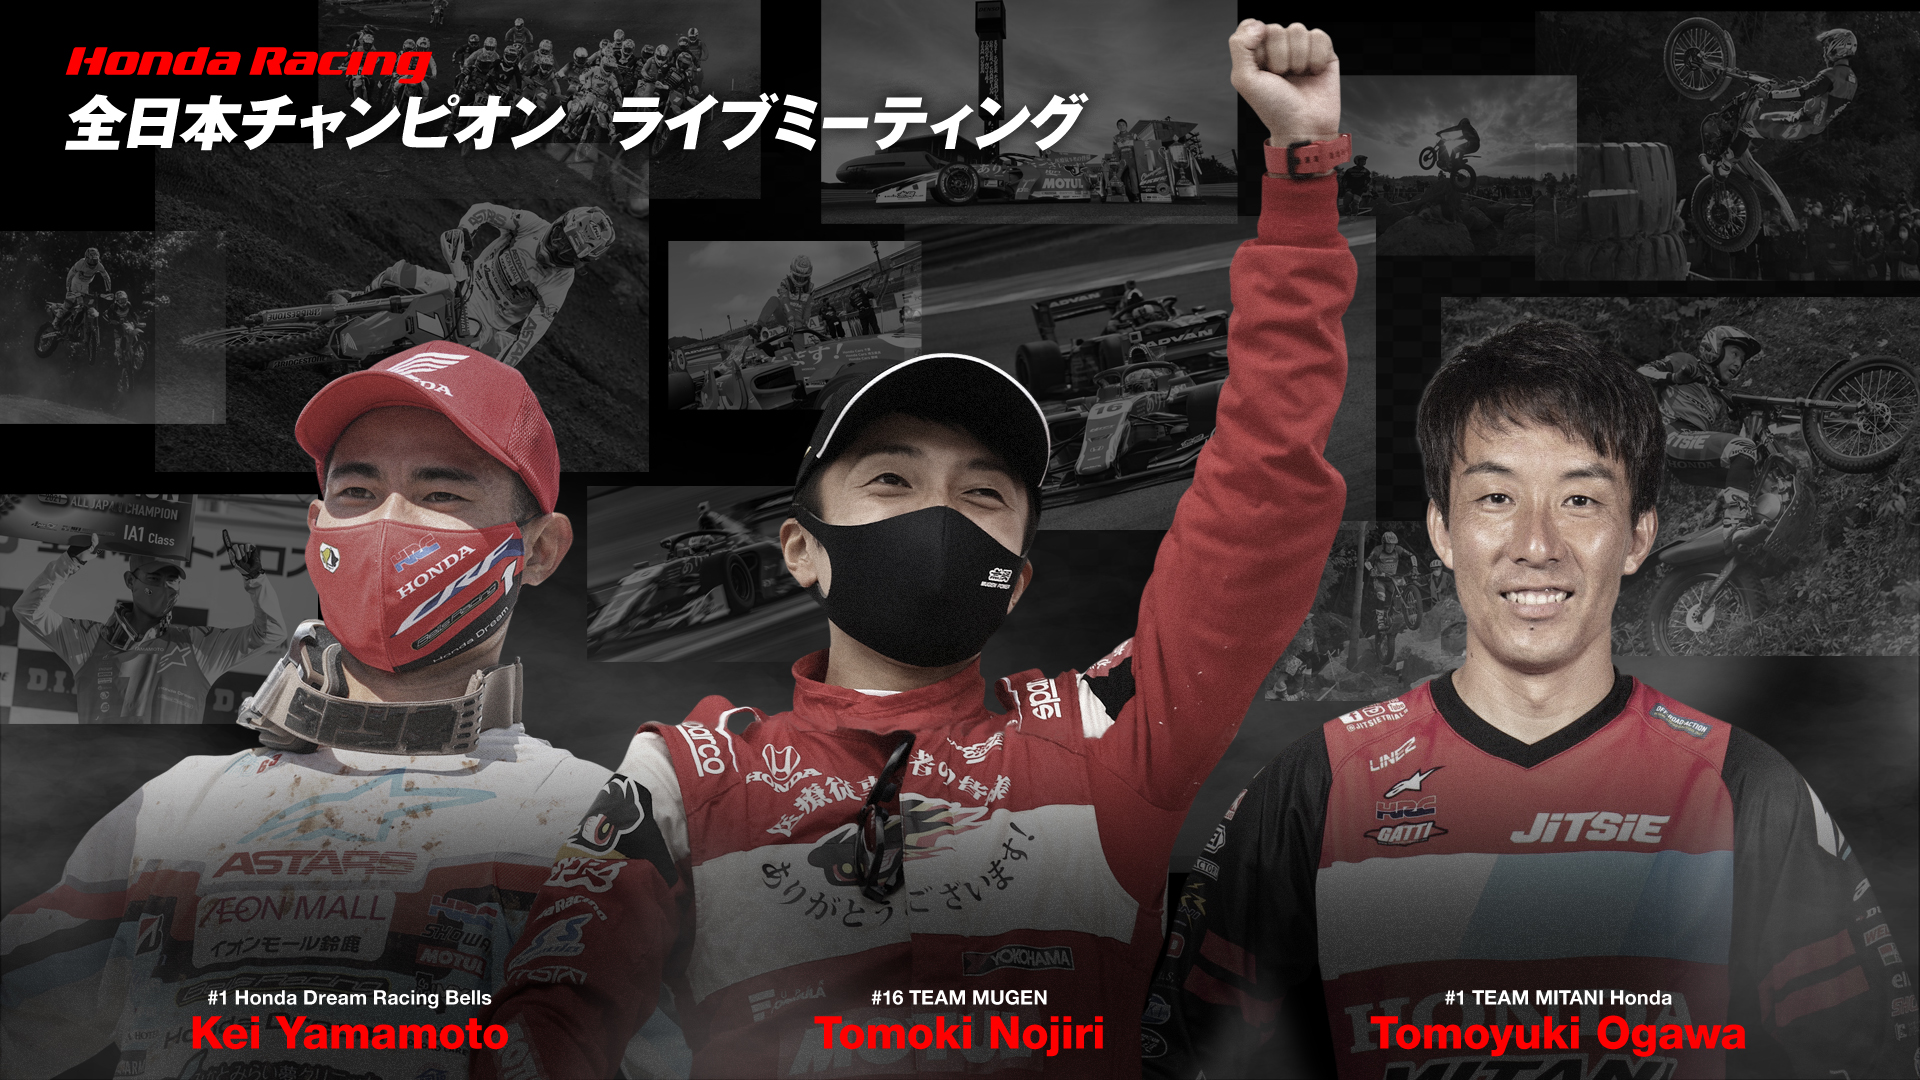 Honda Racing 全日本チャンピオン ライブミーティング